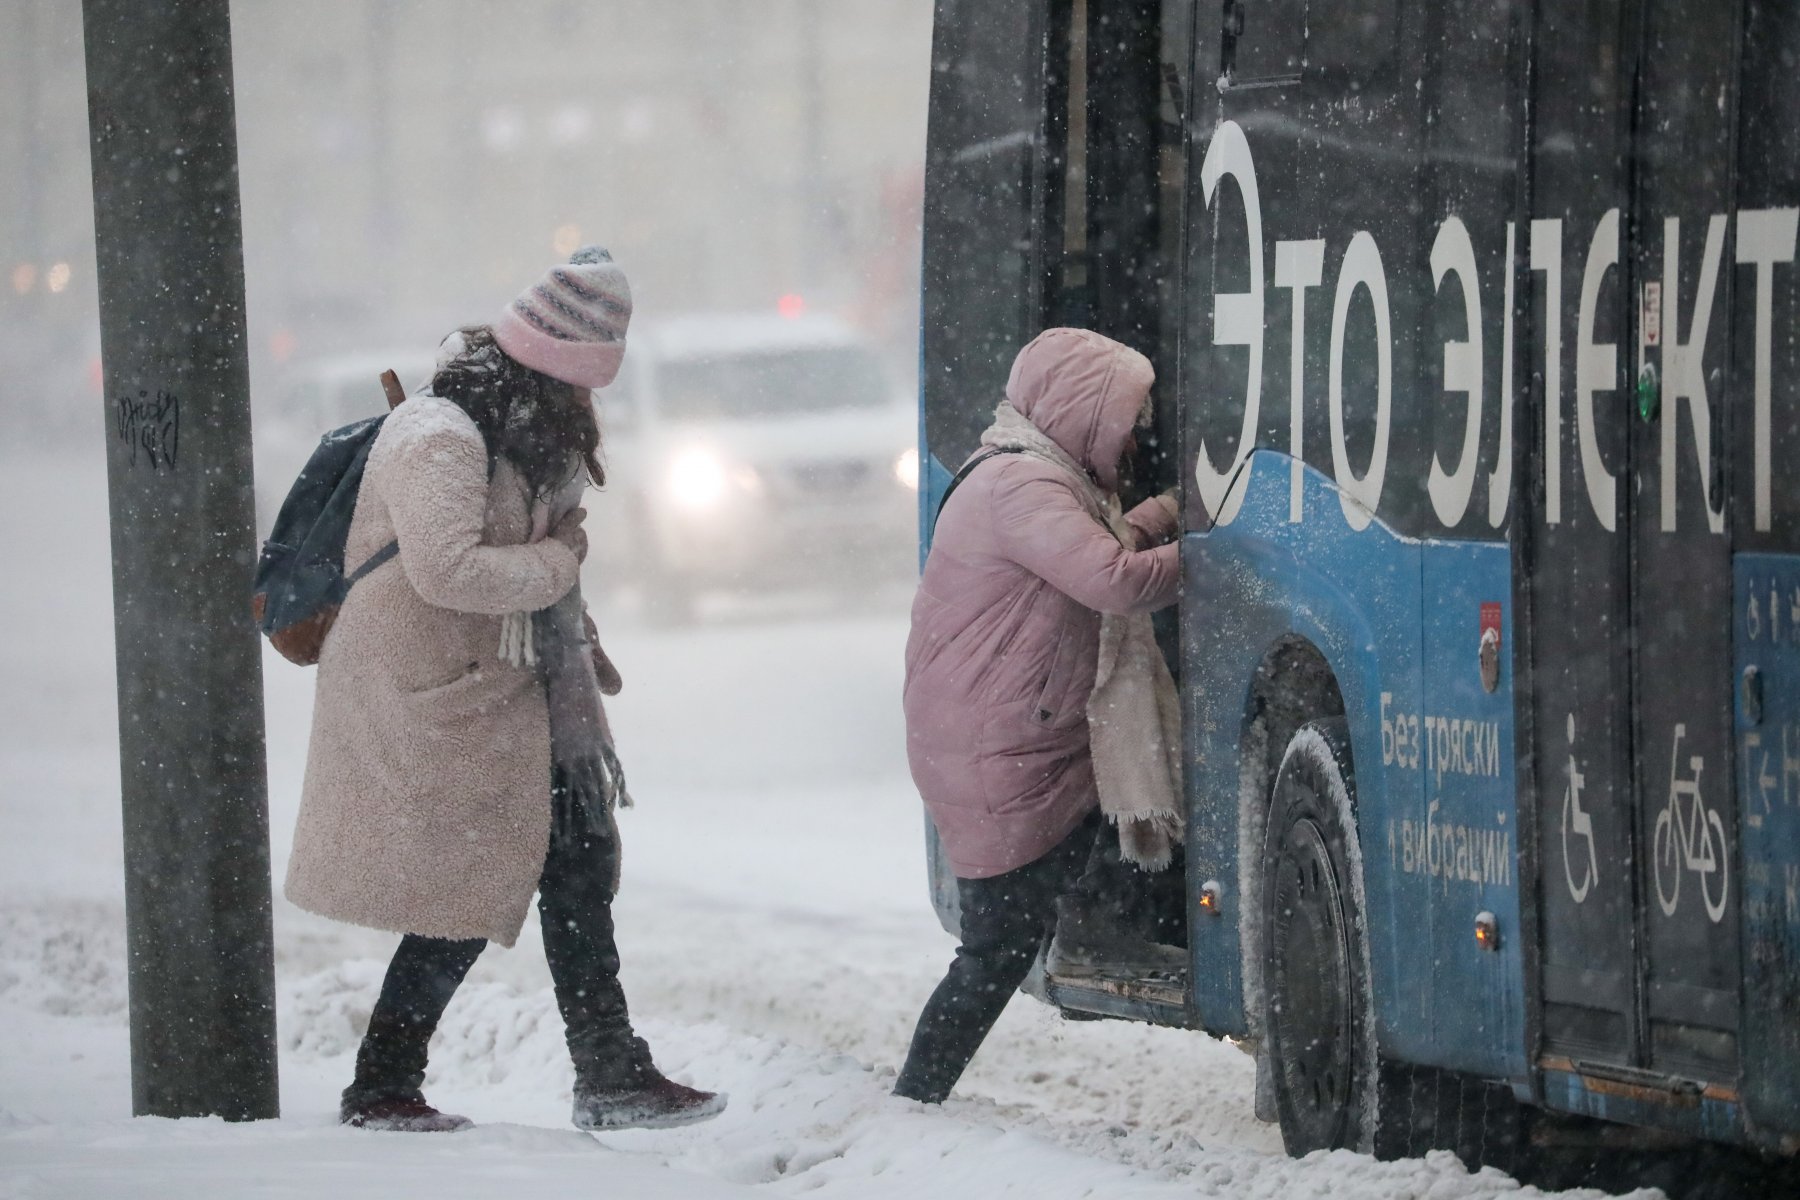 Столичным автомобилистам рекомендовано пересесть на общественный транспорт из-за снегопада 